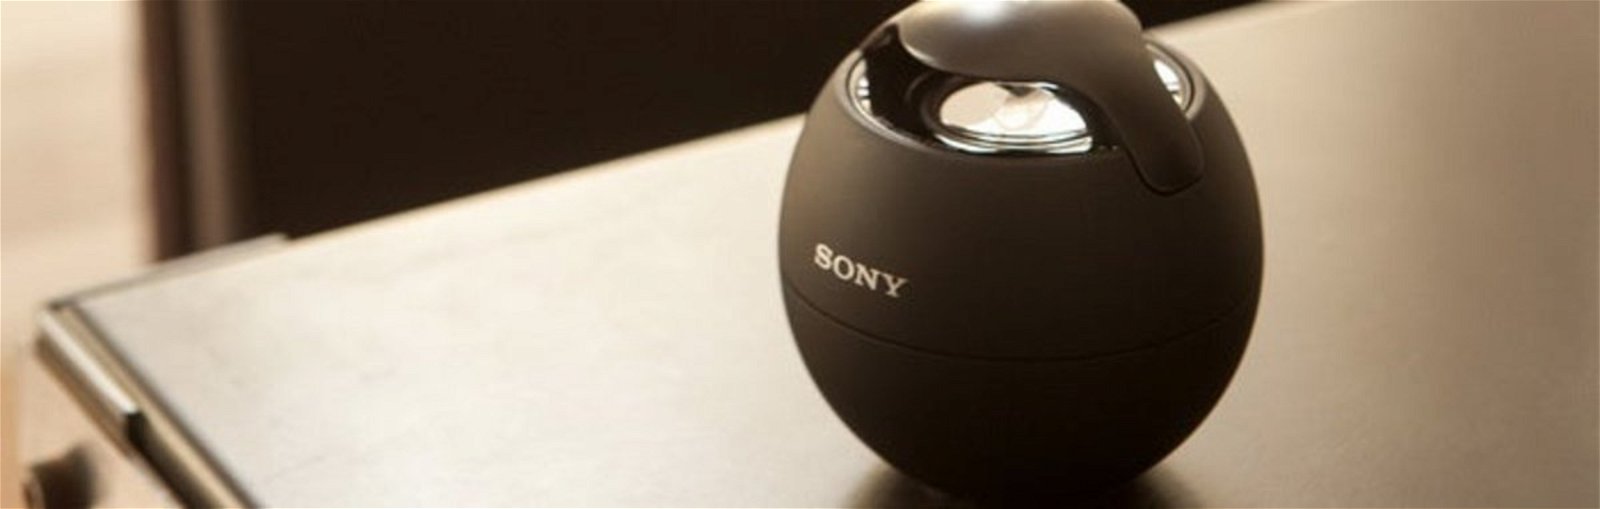 Sony-música-wireless